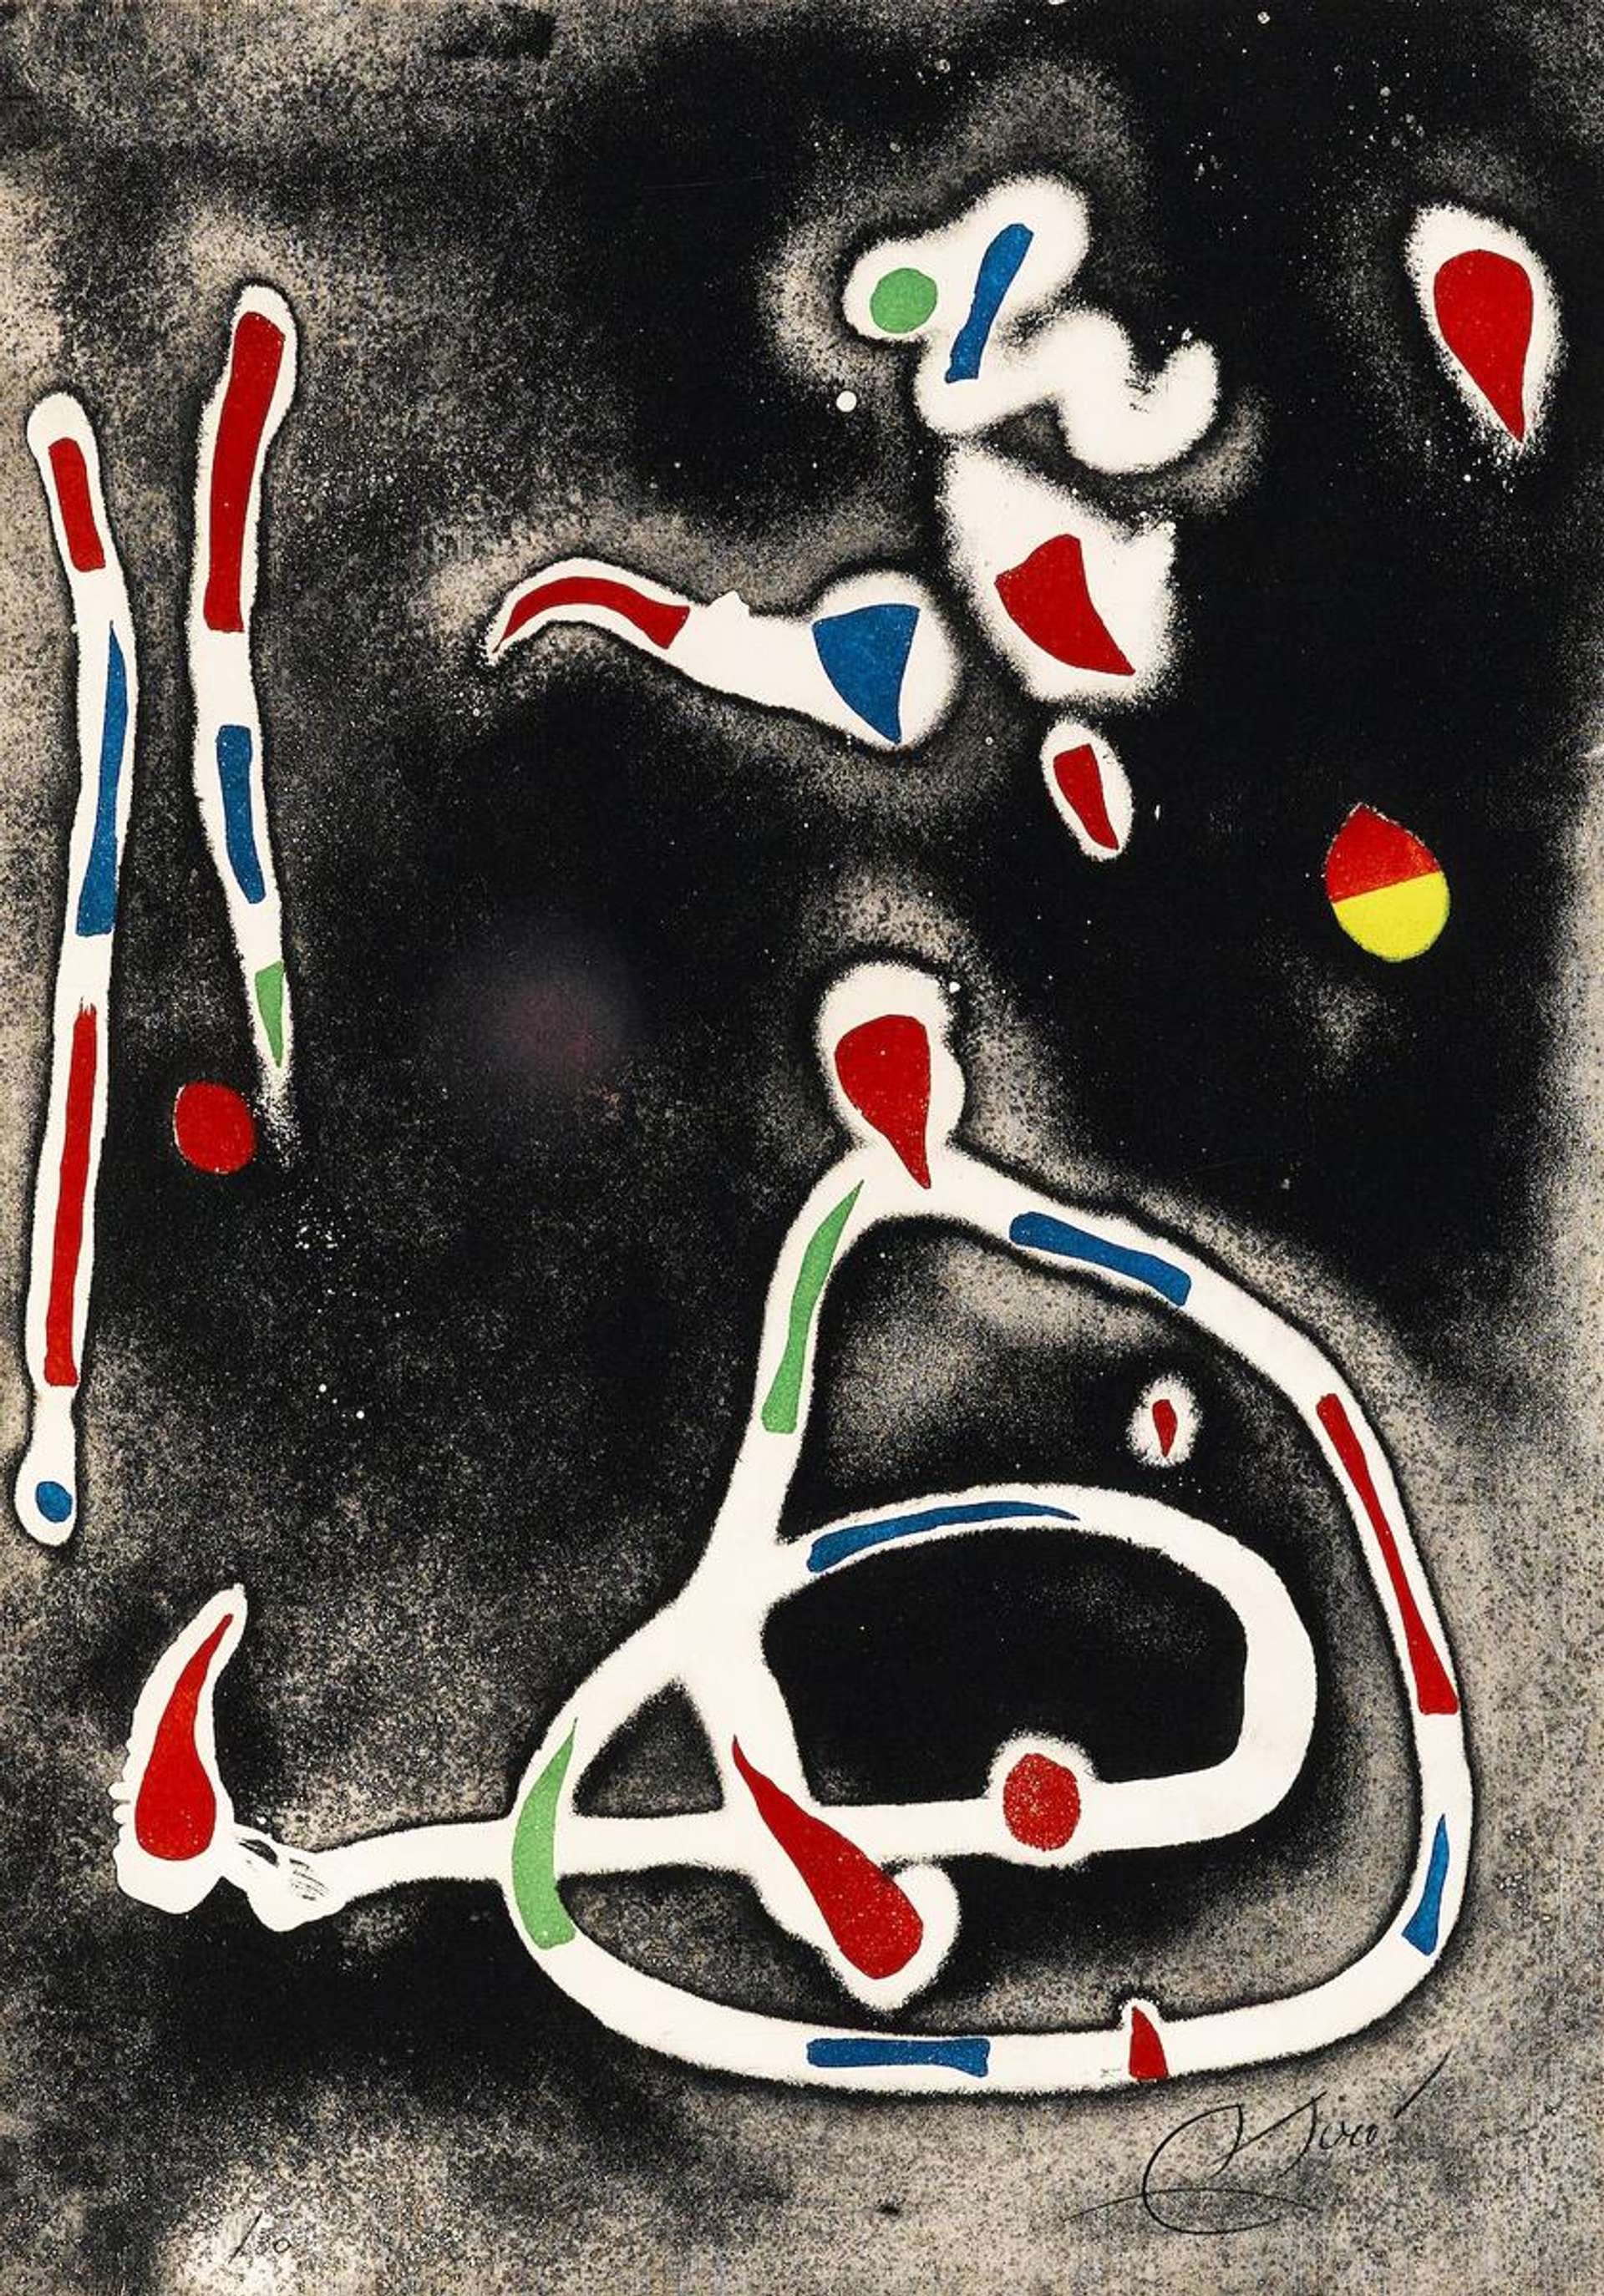 La Traca II - Signed Print by Joan Miró 1979 - MyArtBroker